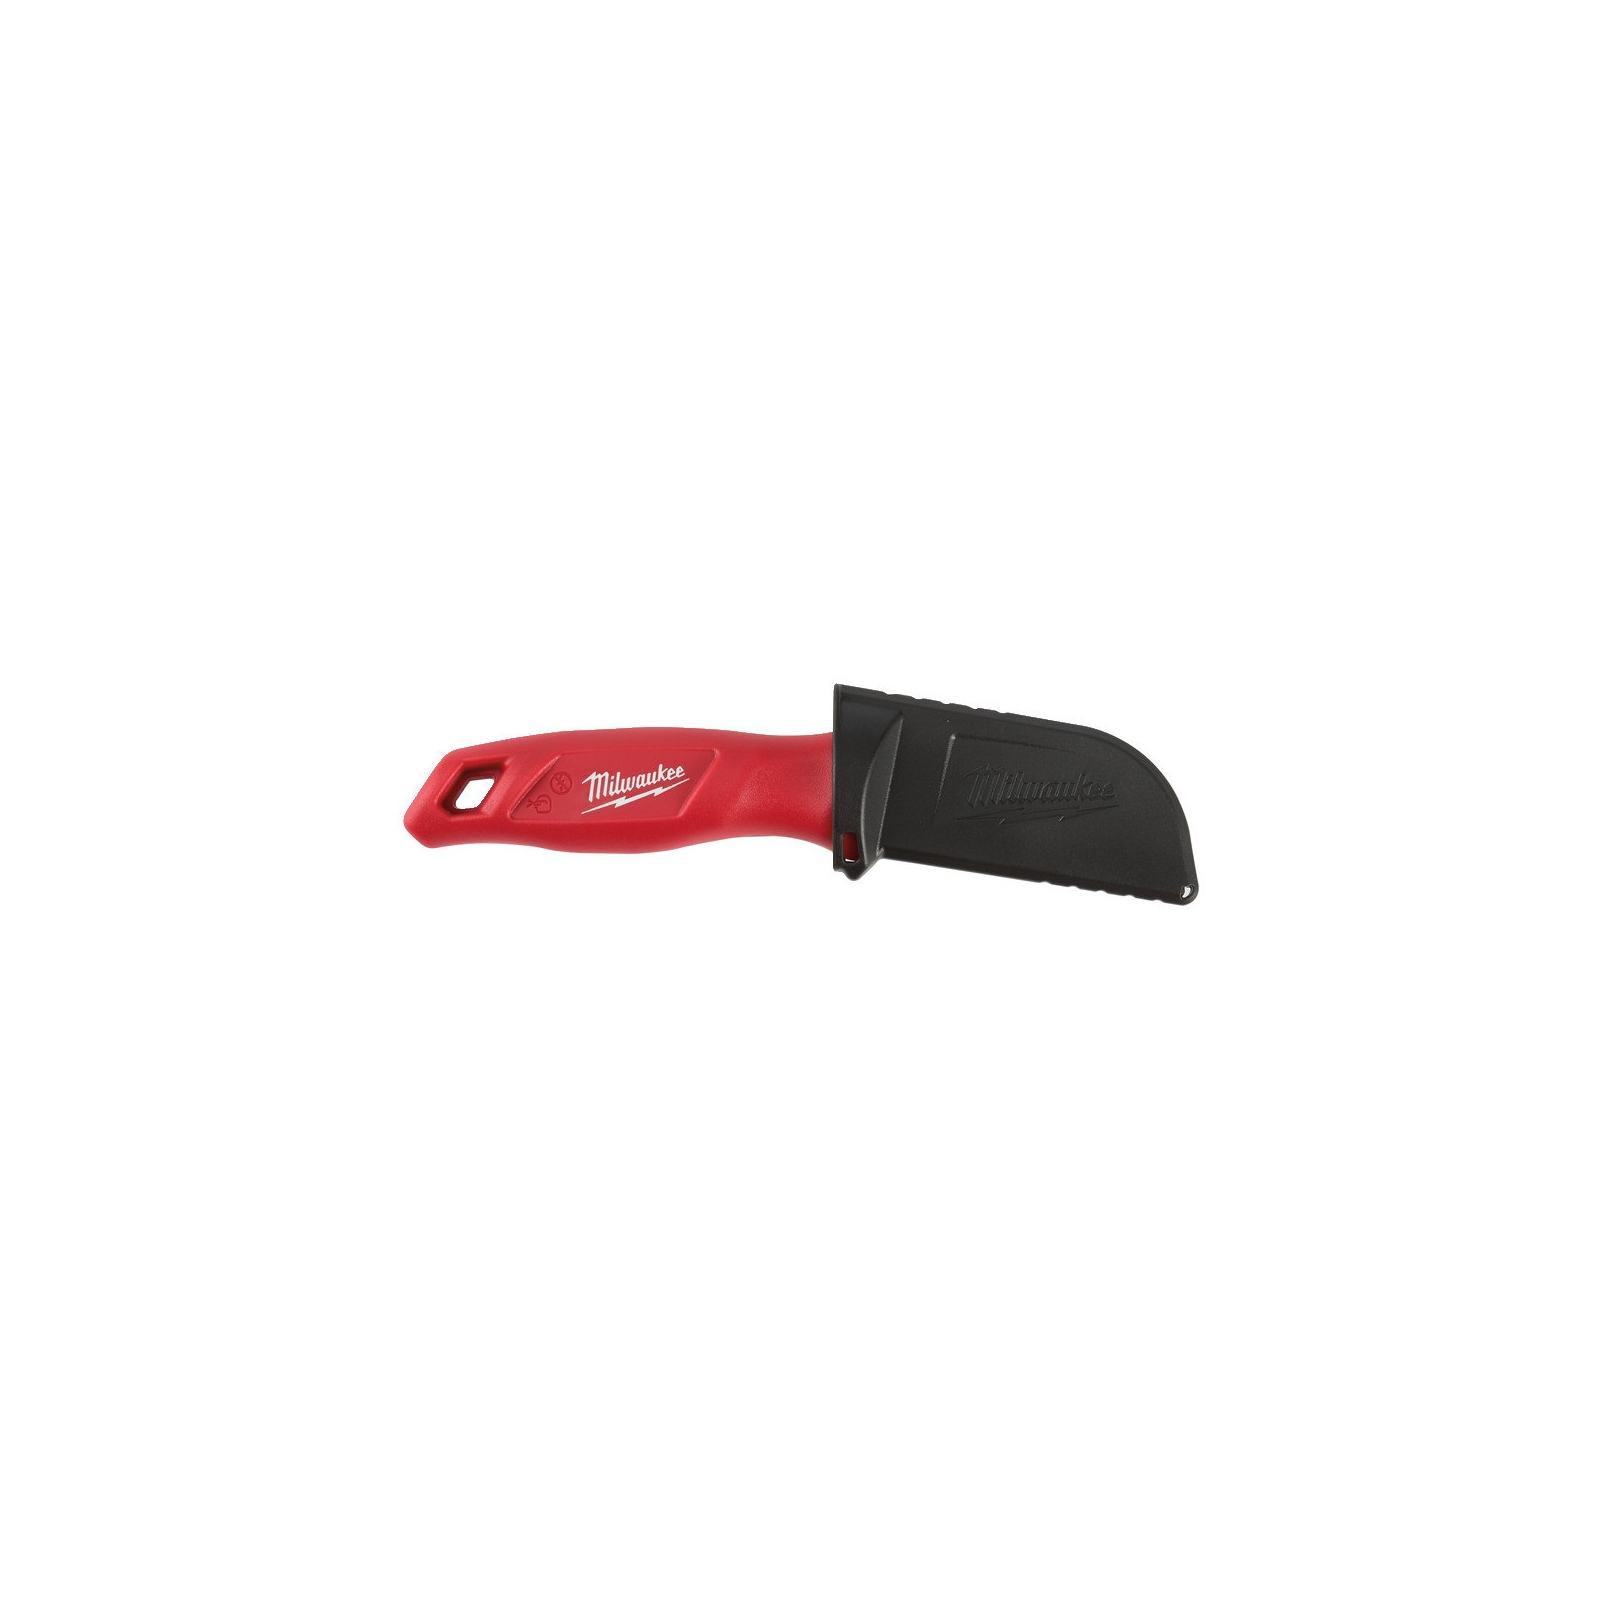 Нож монтажный Milwaukee строительный с фиксированным загнутым лезвием, для кабеля (4932464829) изображение 2